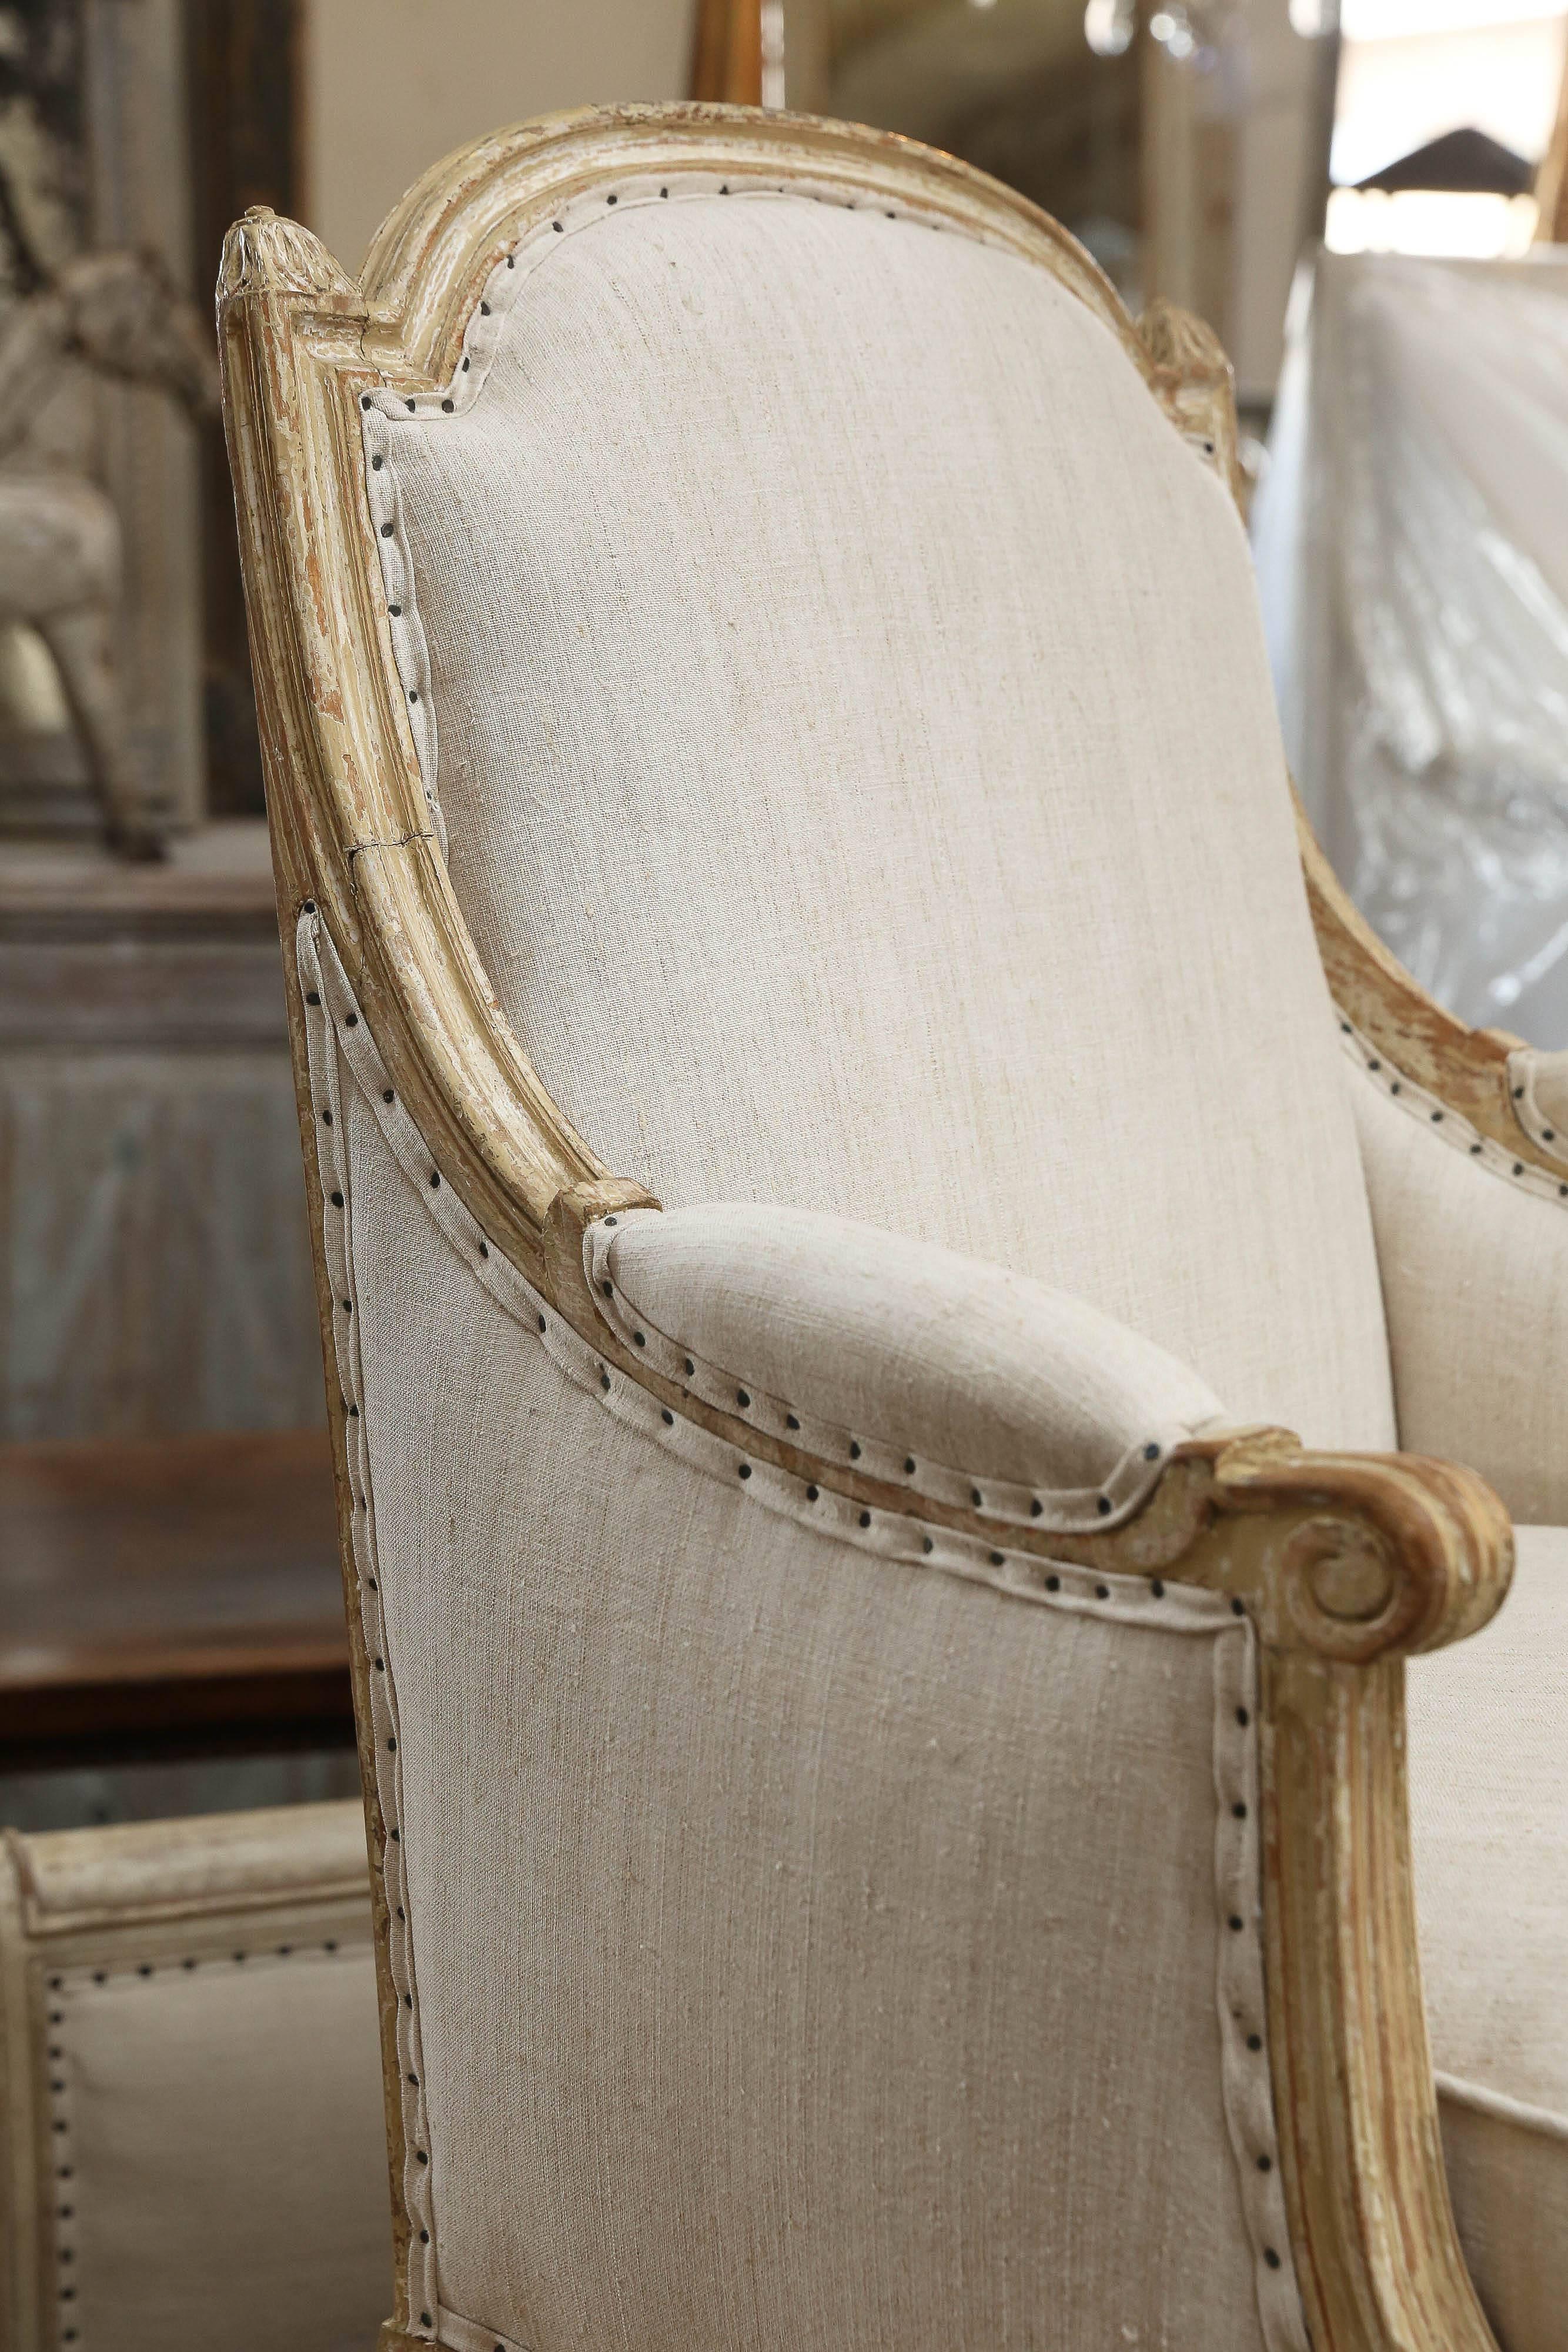 Fauteuils bergères français avec peinture crème d'origine, vers 1850. Ces chaises sont de grande taille et s'intègrent dans n'importe quel cadre moderne ou traditionnel. Ils ont été nouvellement tapissés en lin hongrois vingage et les coussins sont